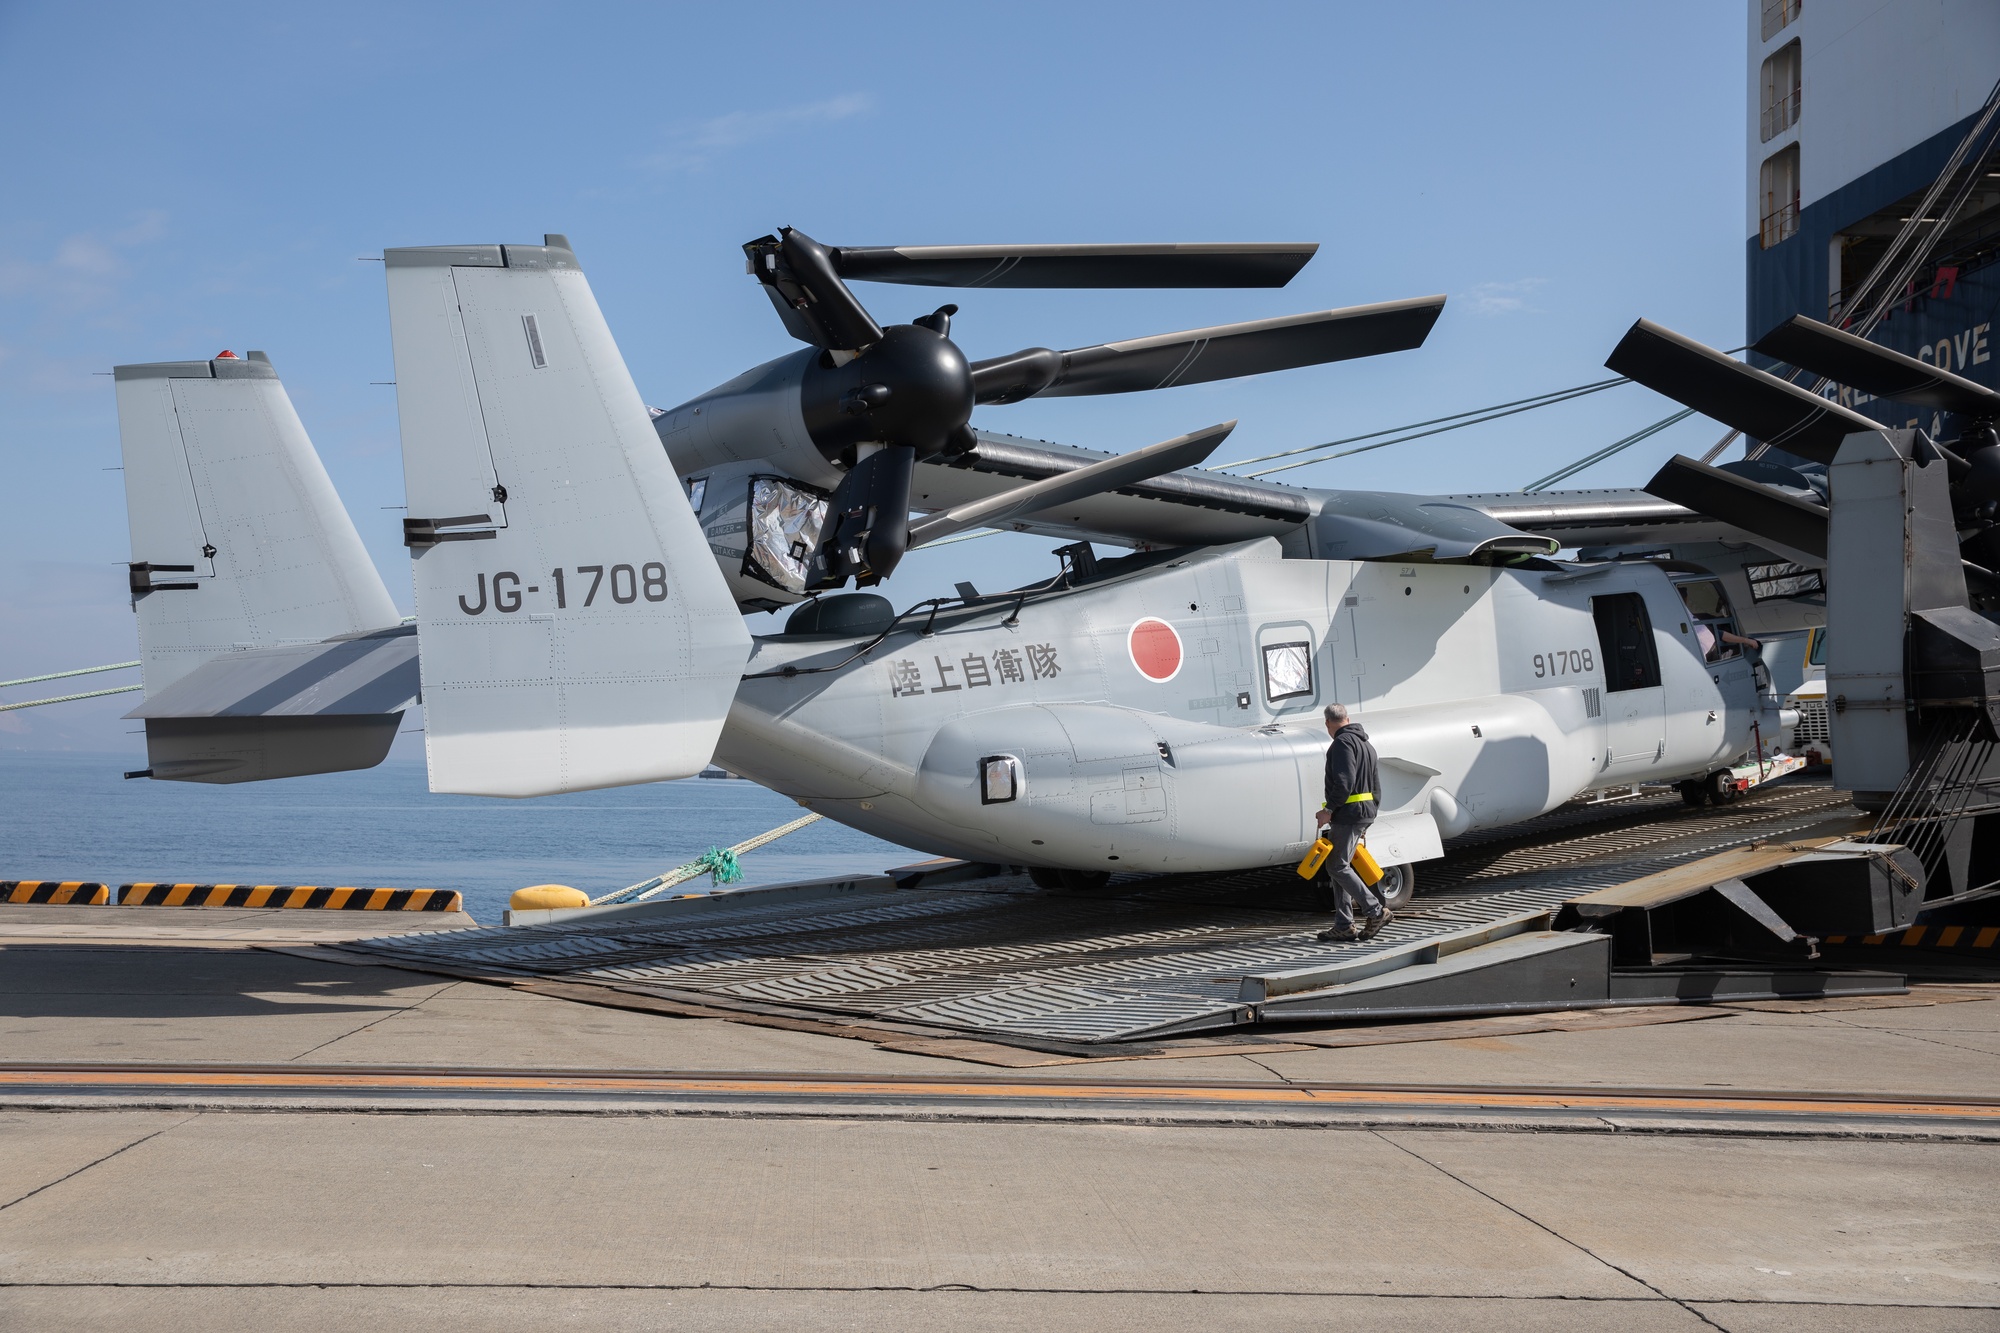 DVIDS - Images - JGSDF V-22 Ospreys arrive at MCAS Iwakuni [Image 